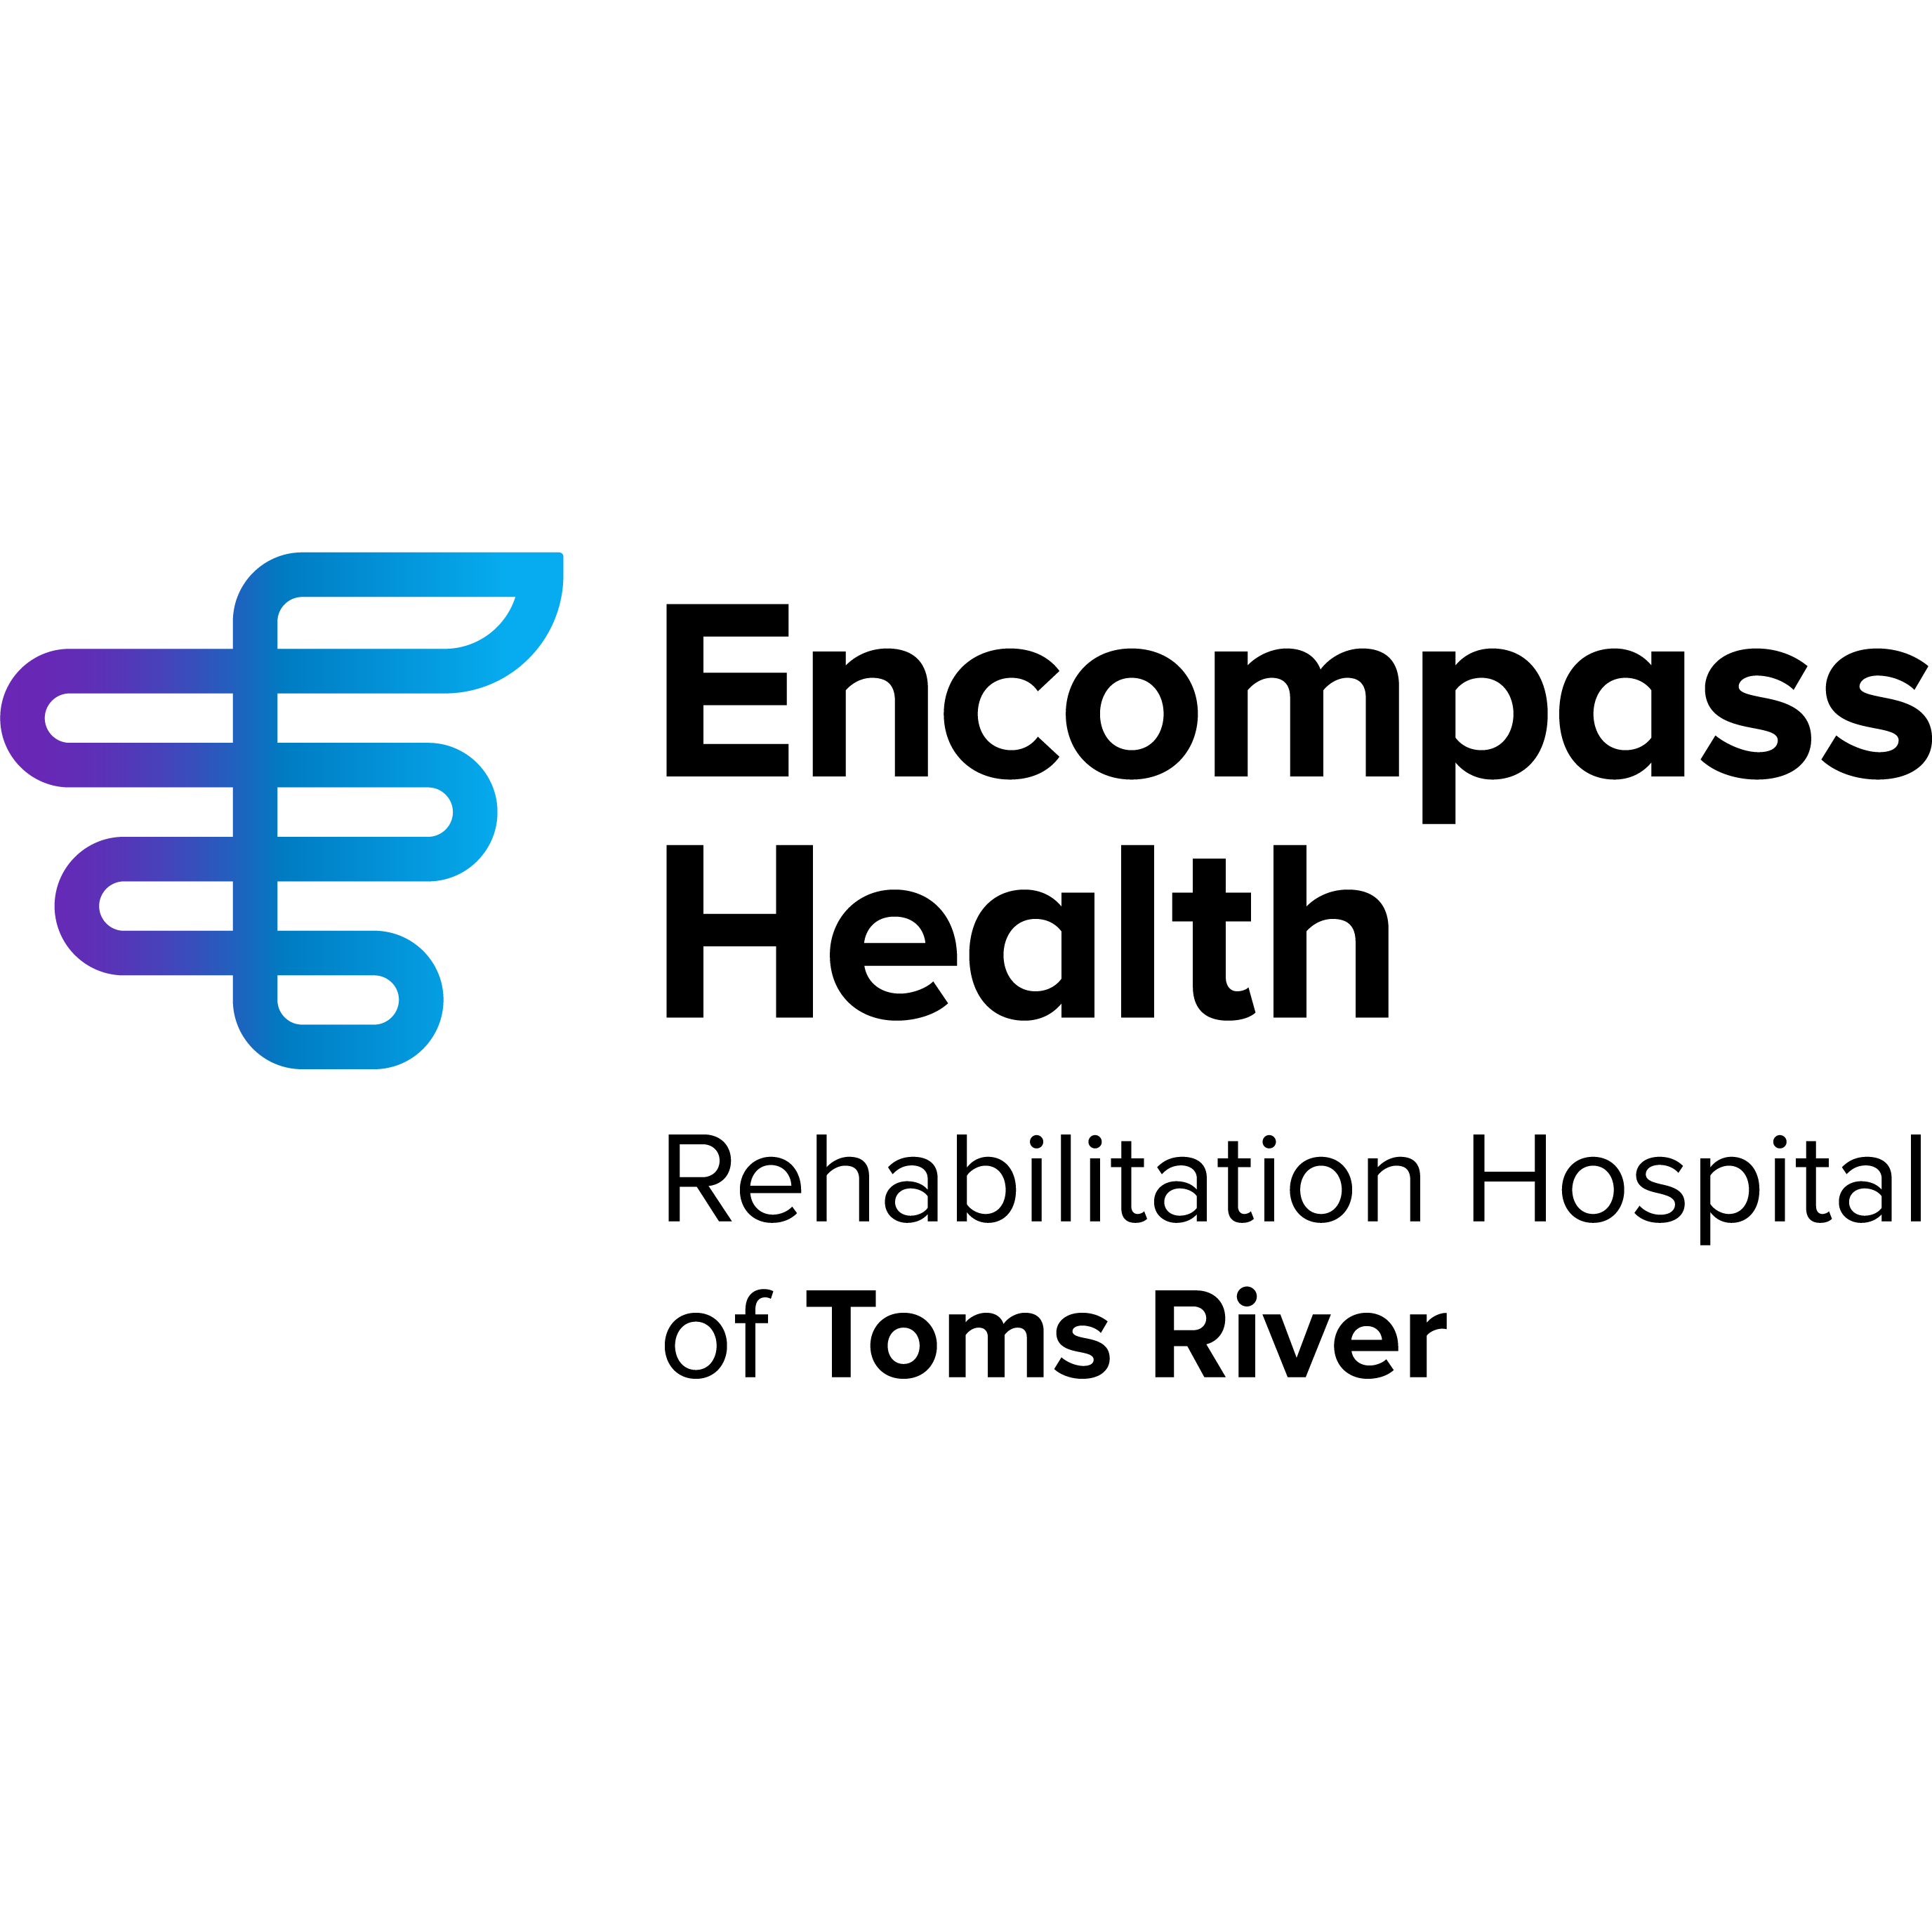 Encompass Health Rehabilitation Hospital of Toms River - Toms River, NJ 08755 - (732)244-3100 | ShowMeLocal.com